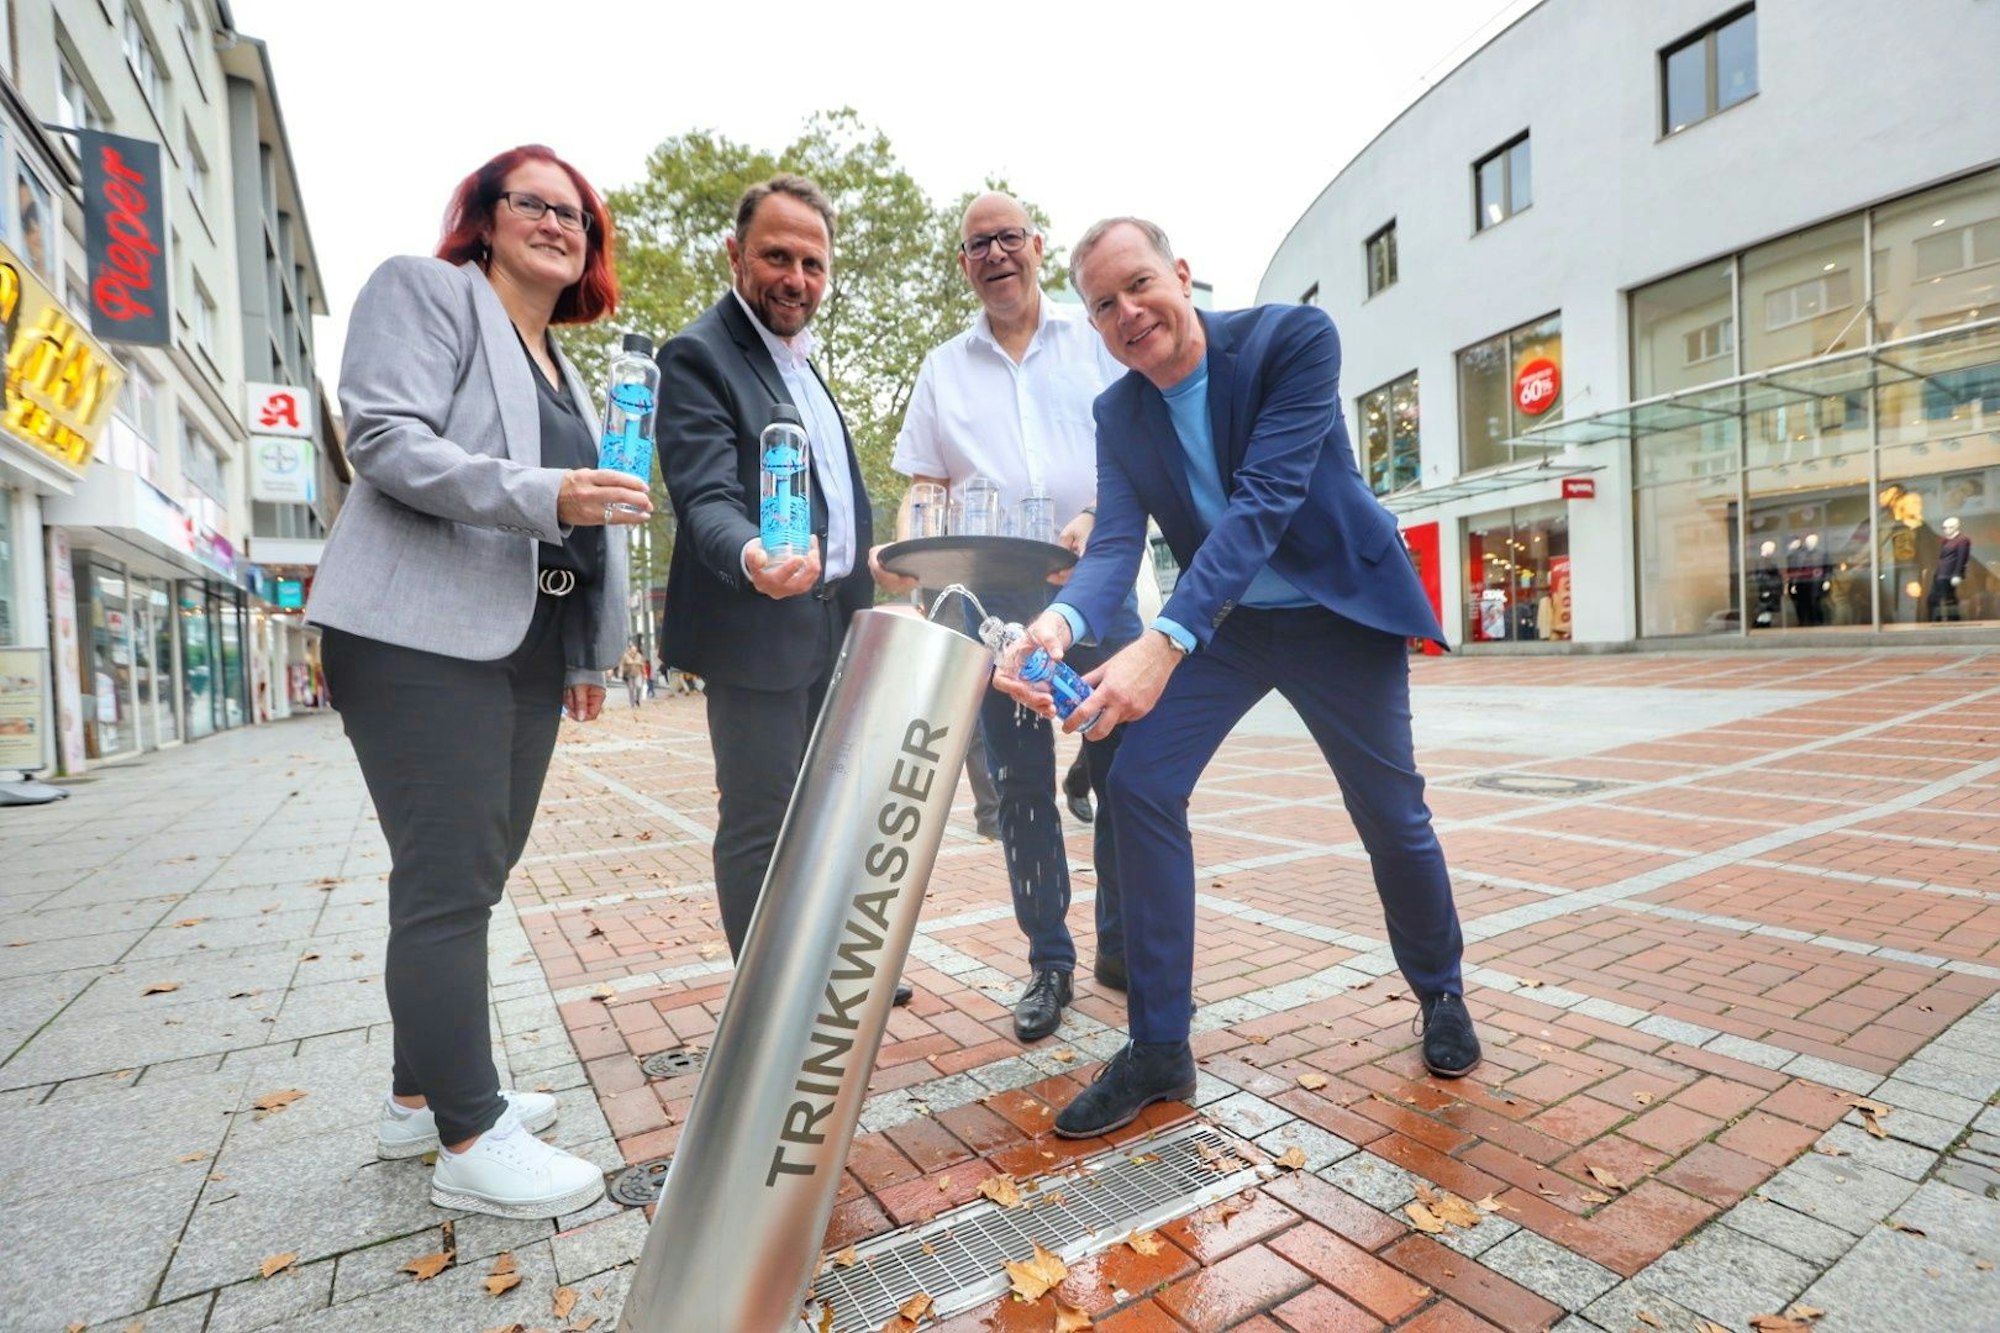 Bezirksbürgermeisterin Michaela Di Padova, Oberbürgermeister Uwe Richrath, Ralf Billstein, Projektleiter EVL und EVL-Geschäftsführer Thomas Eimermacher testen den neuen Trinkwasserbrunnen.